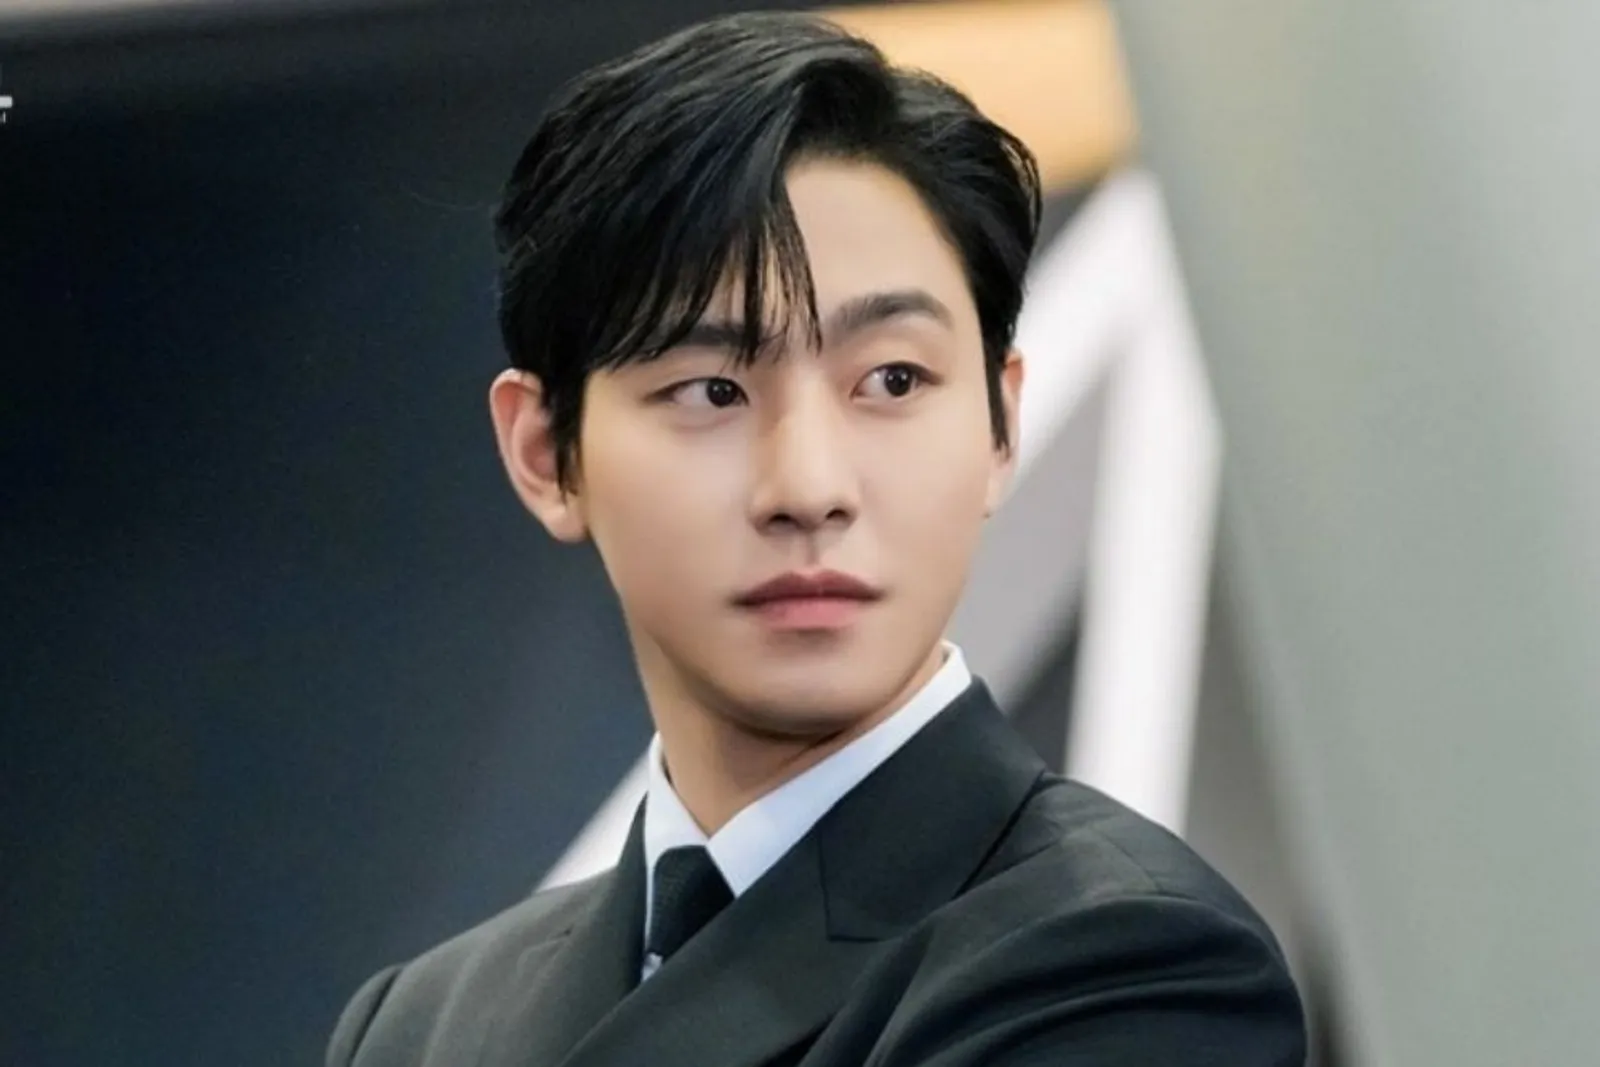 Deretan Aktor Korea Tampil Berkarisma dengan Side Bang Hairstyle 